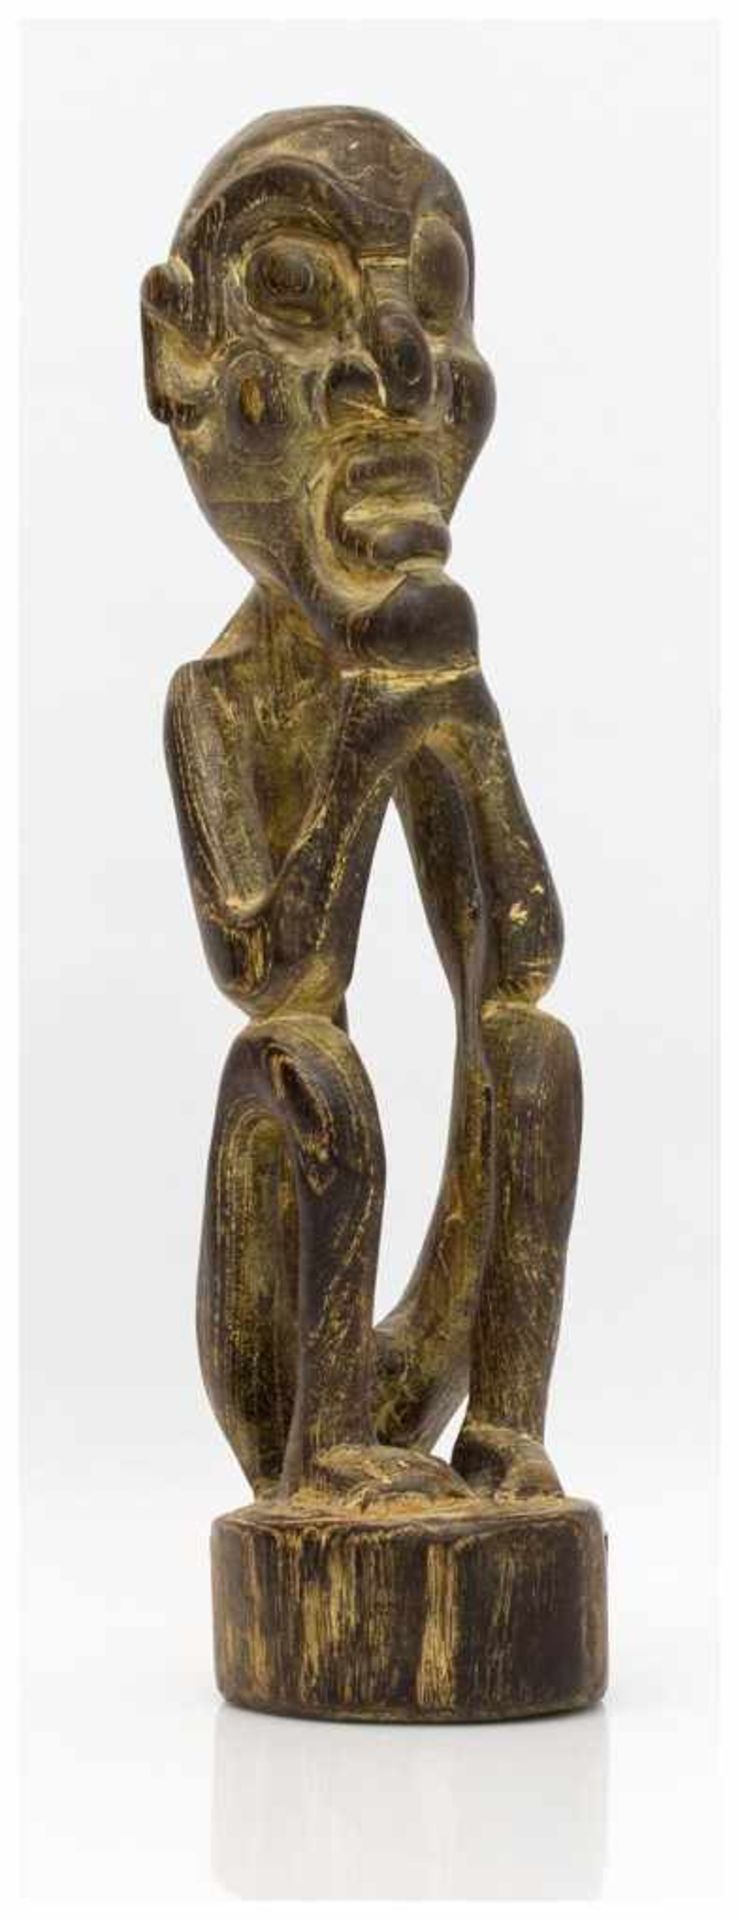 Ahnenfigur wohl Südsee 20. Jh., sitzende Ahnenfigur mit aufgestütztem Kinn, Holz geschnitzt, H. 30